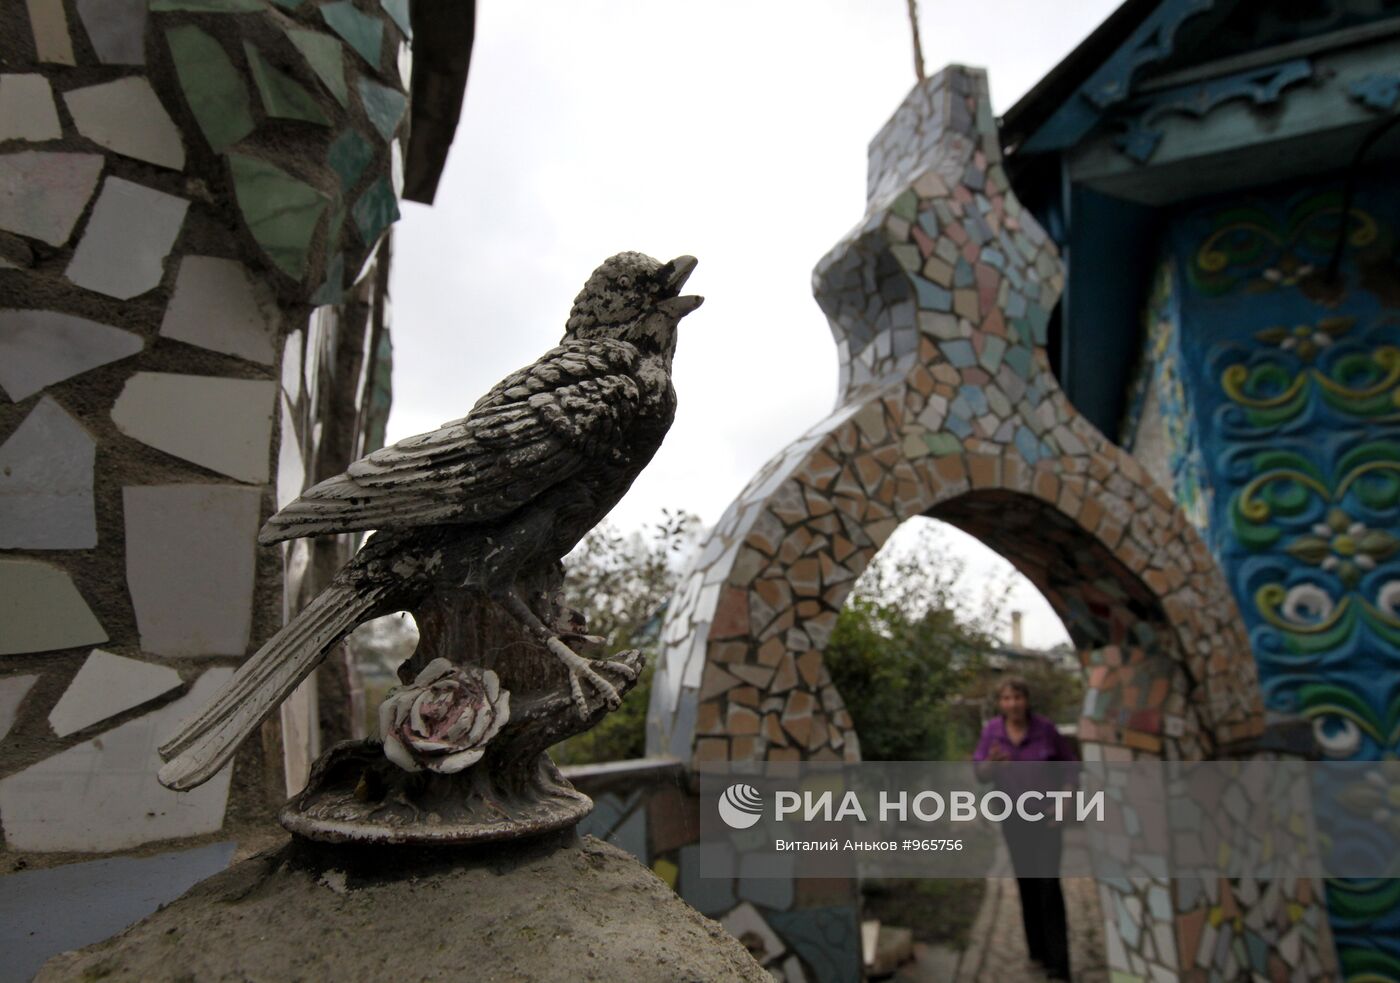 Дворец из строительного мусора в Приморском крае